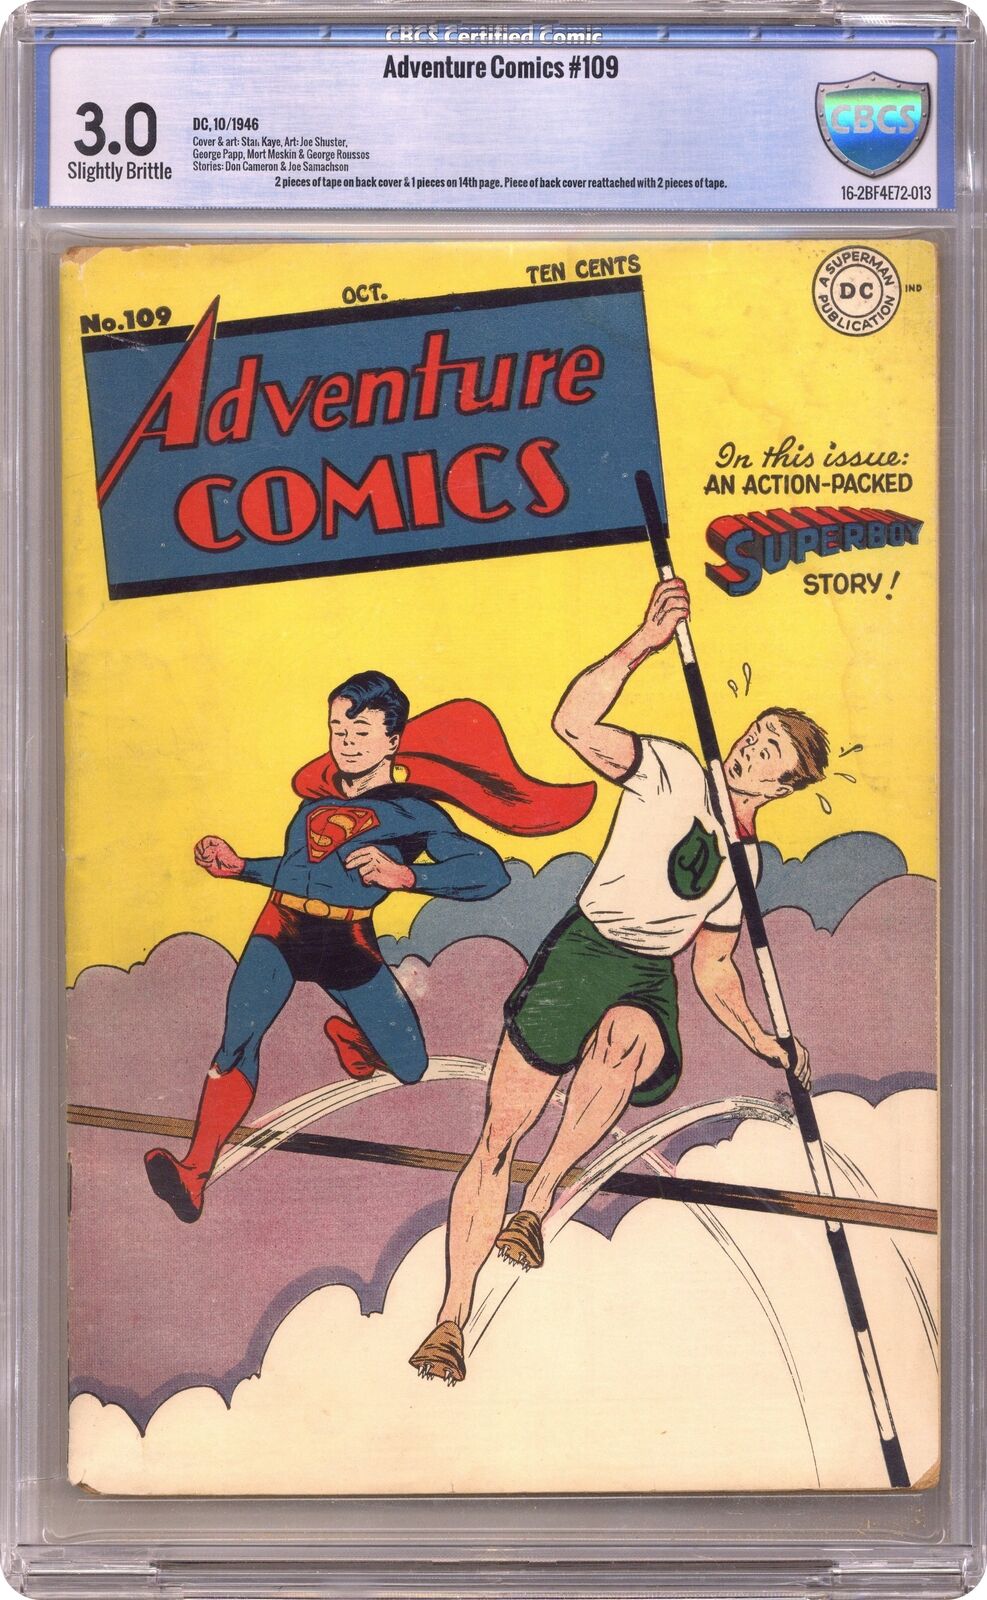 Adventure Comics #109 CBCS 3.0 1946 16-2BF4E72-013